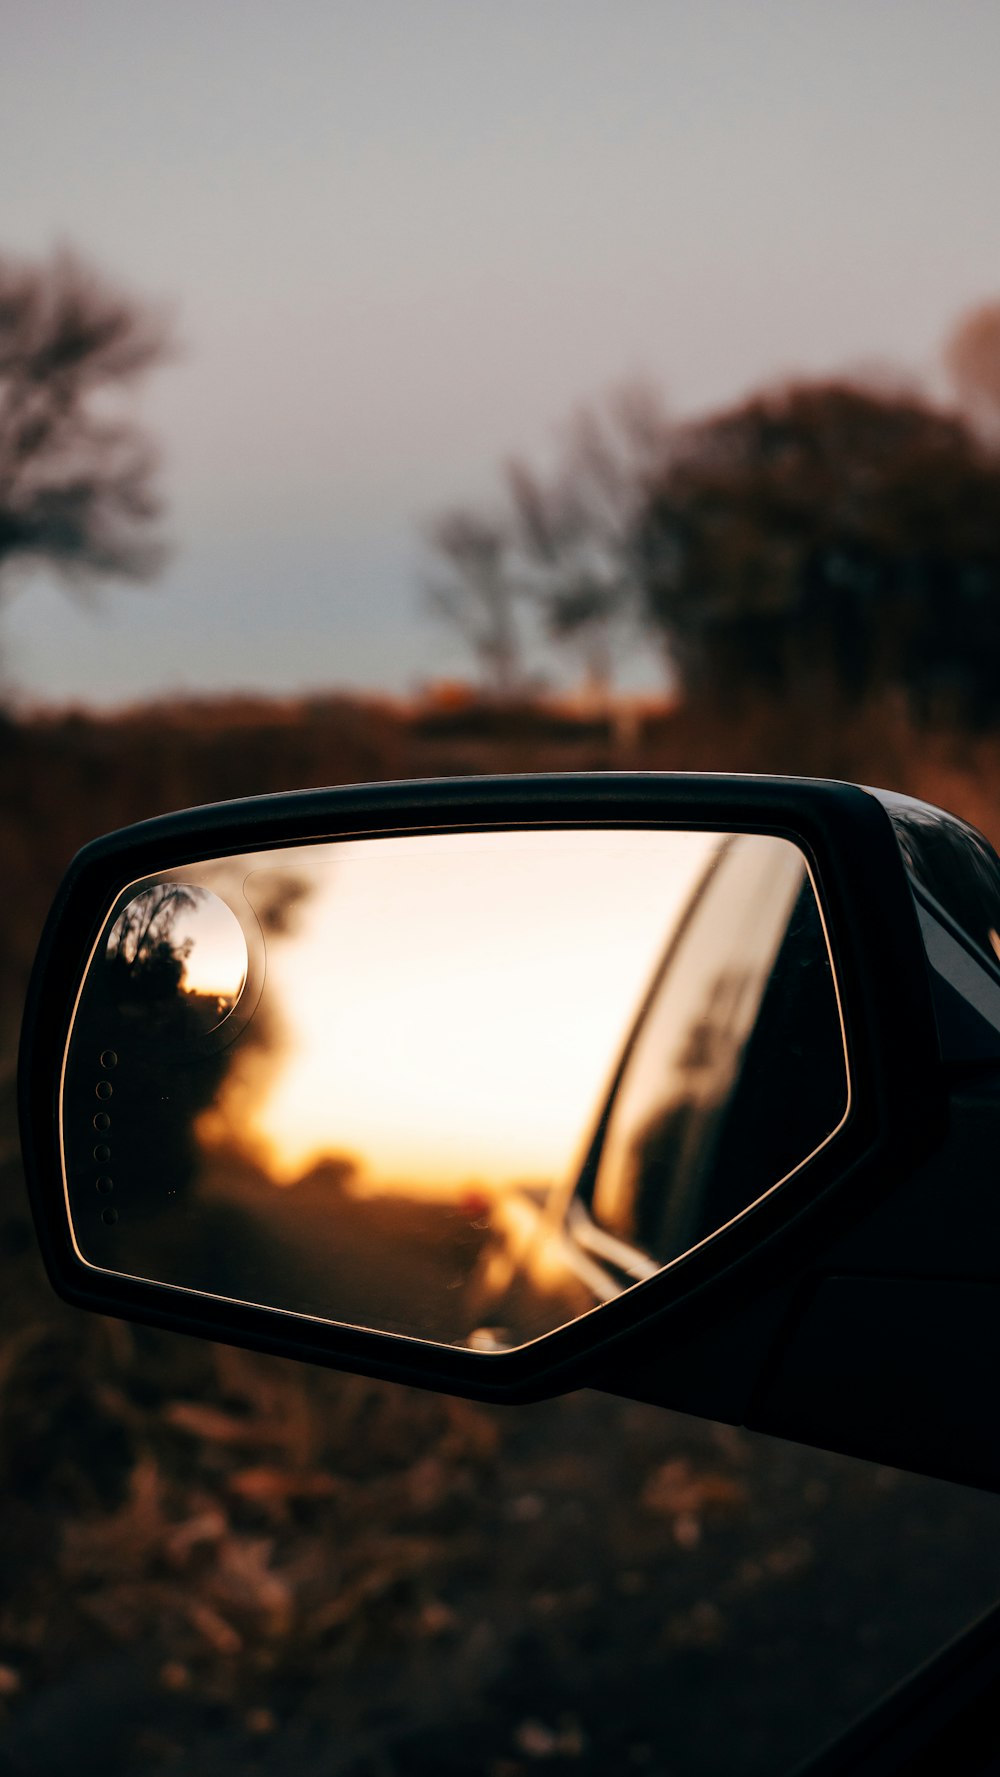 espelho lateral do carro com reflexo das árvores na estrada durante o dia